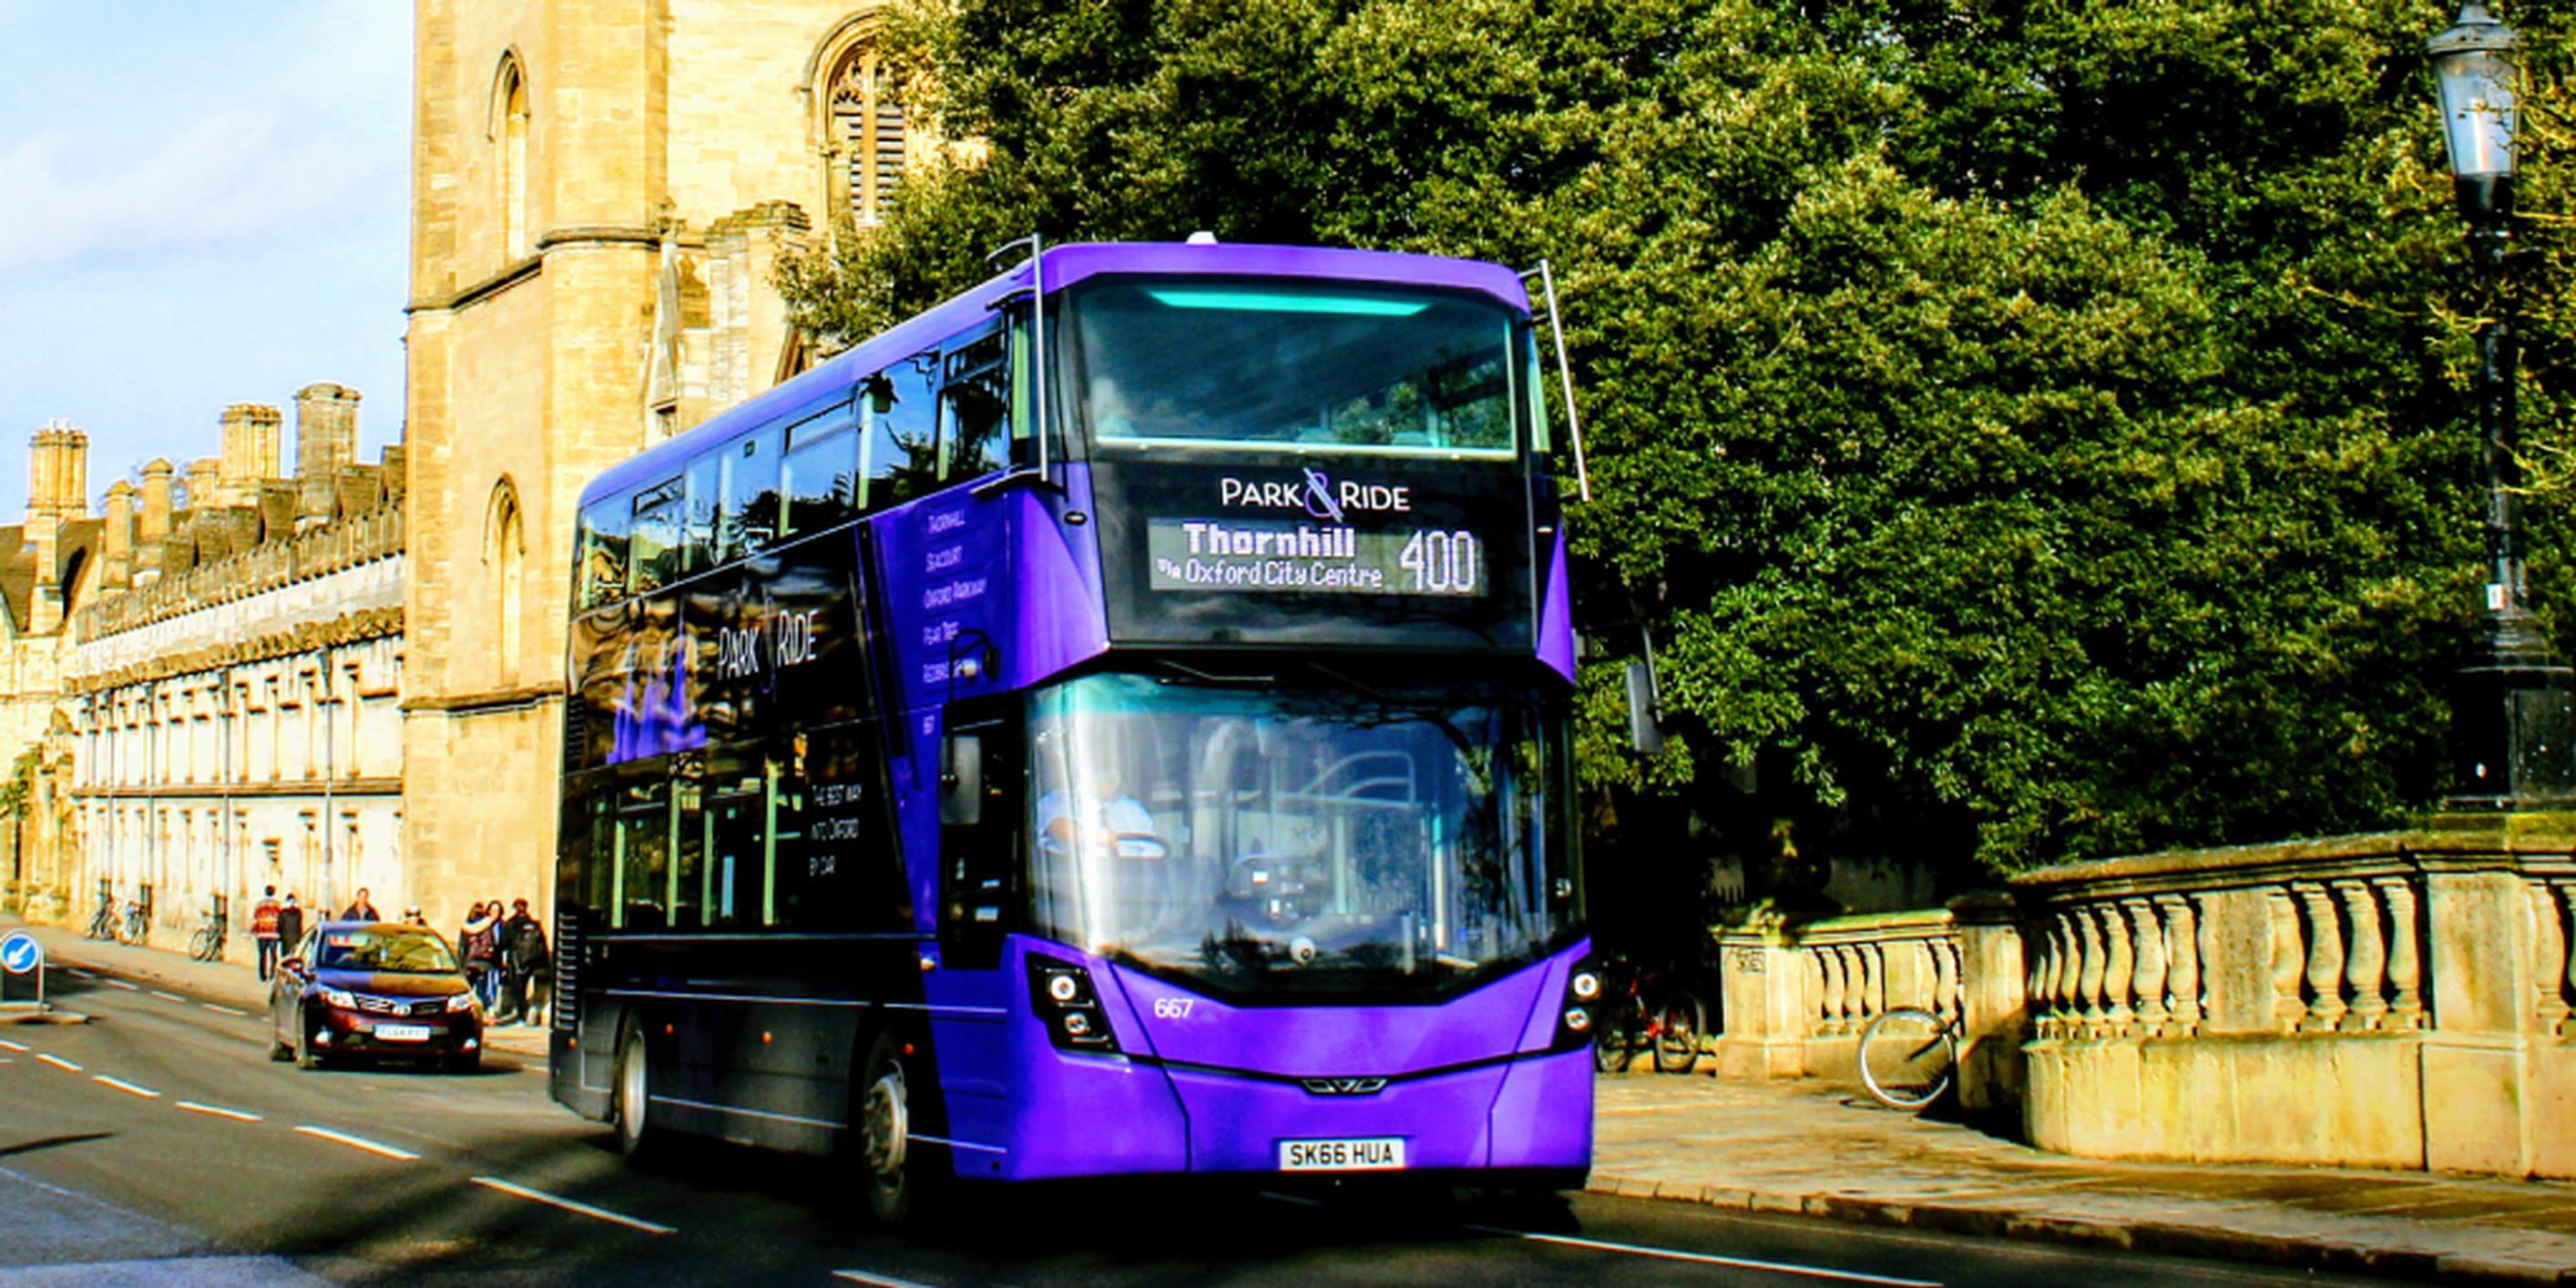 An Oxford P&R bus